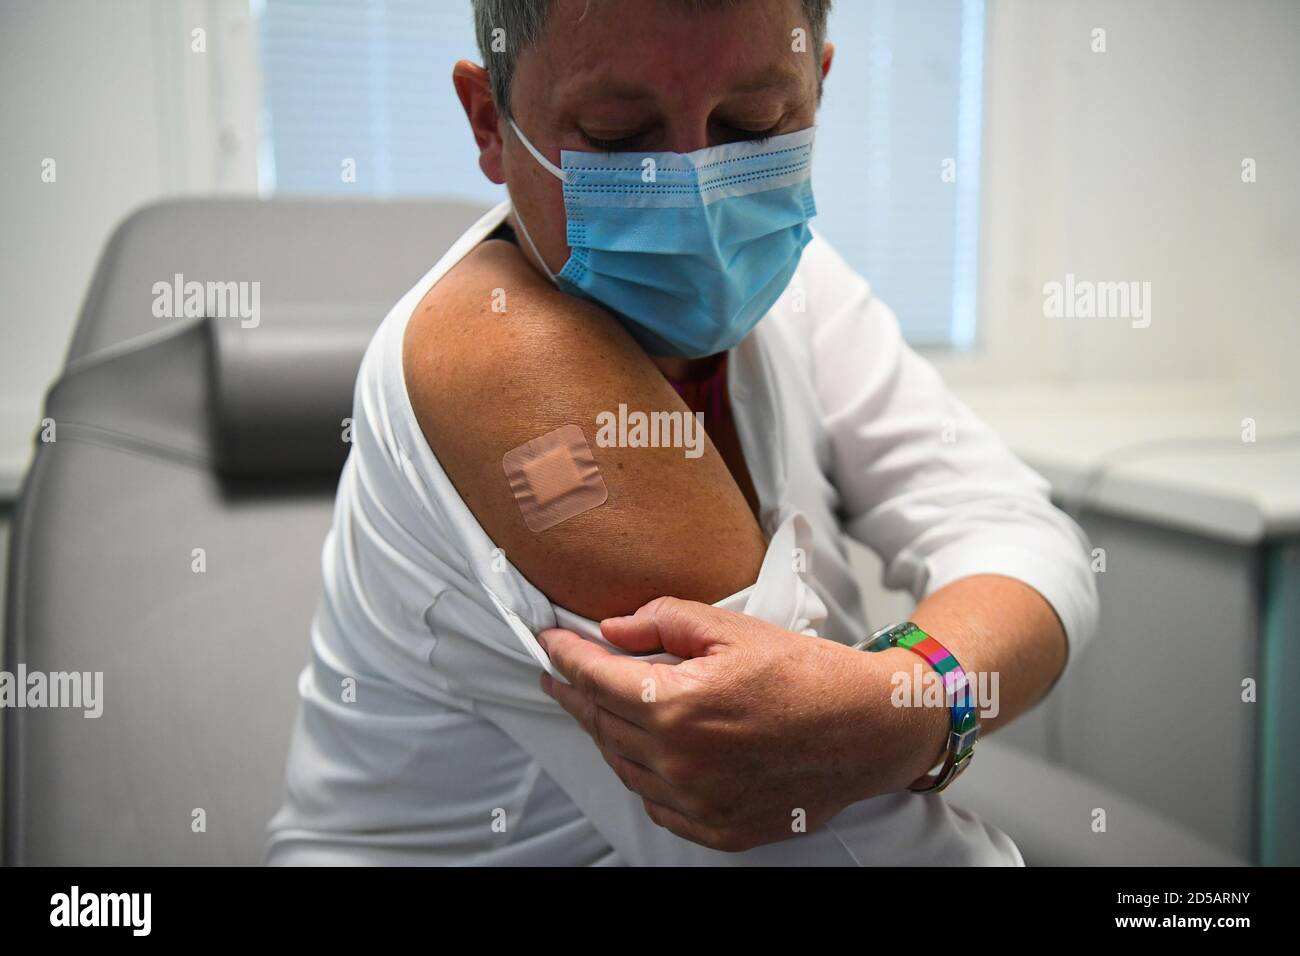 Kate Bingham, présidente de la GVaccine Taskforce du gouvernement, avec un plâtre sur son bras après avoir commencé son essai de Novavax à l'hôpital Royal Free, dans le nord de Londres. Banque D'Images